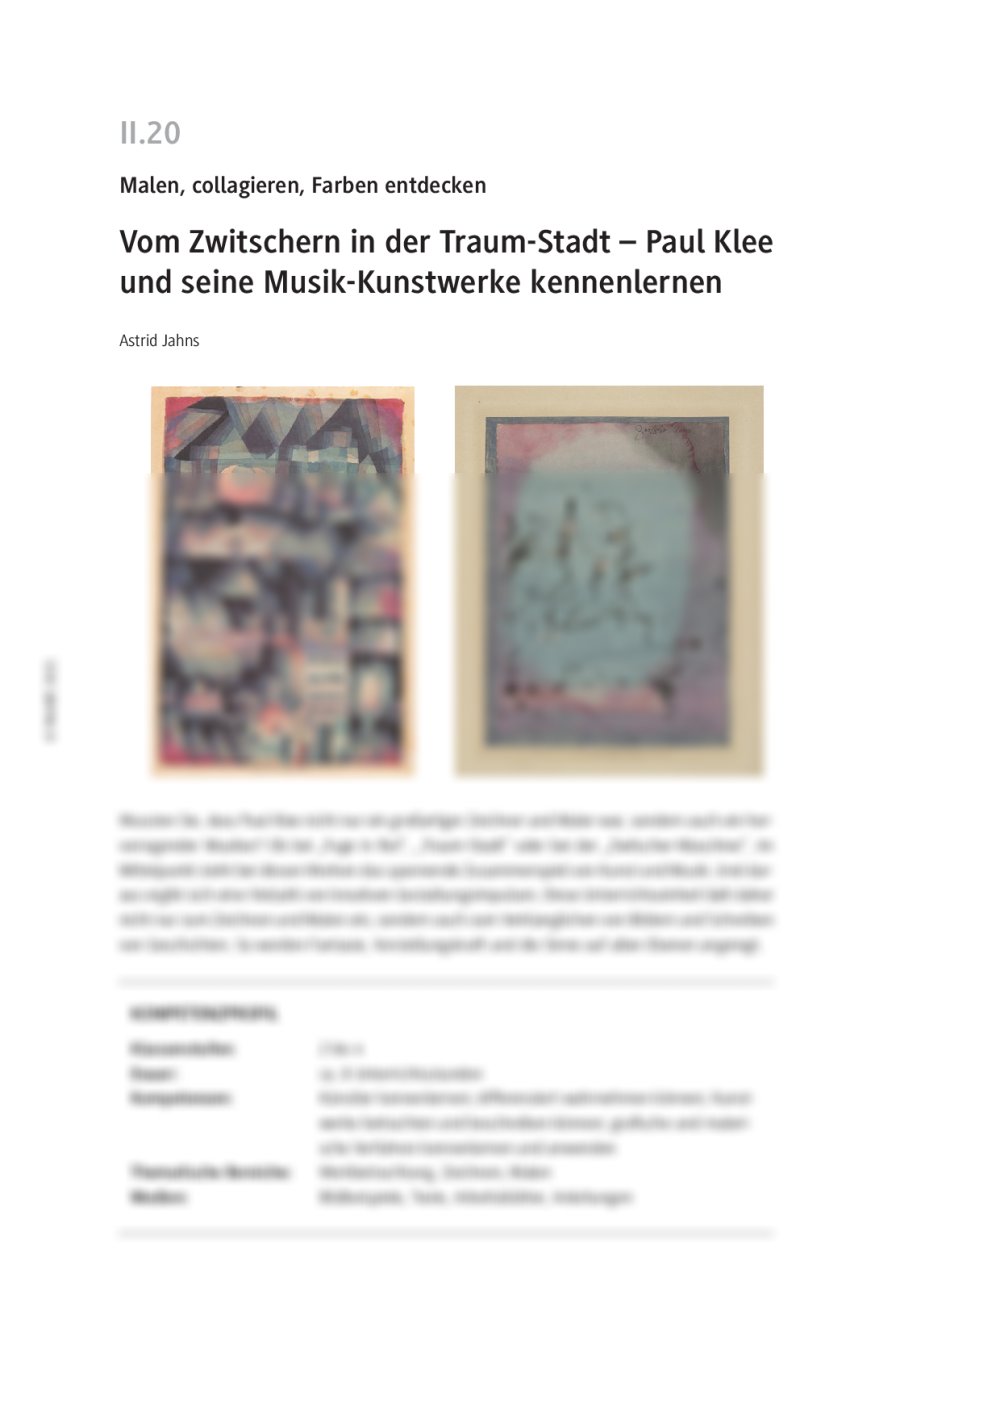 Paul Klee und seine Musik-Kunstwerke - Seite 1